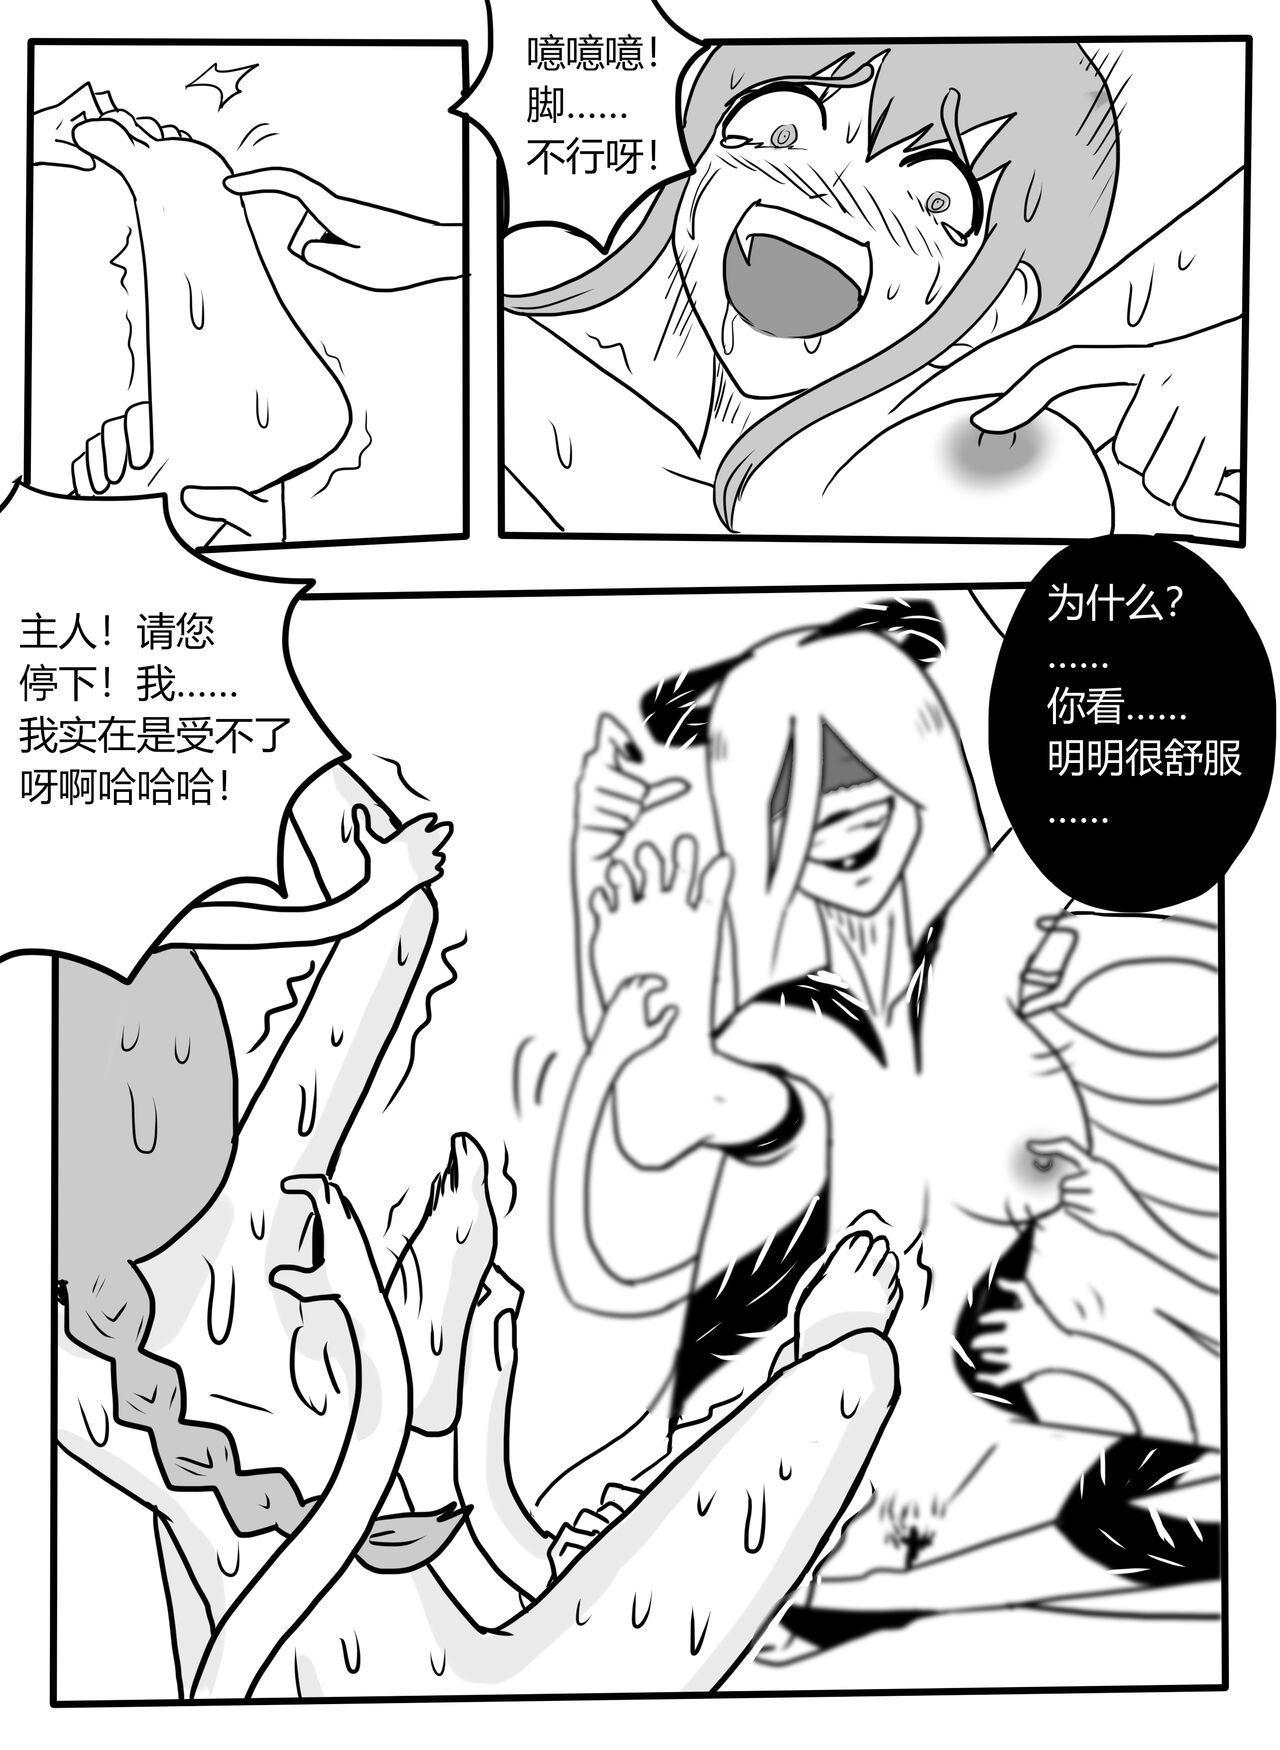 Bondage Makima tk manga - Chainsaw man Nudity - Page 11